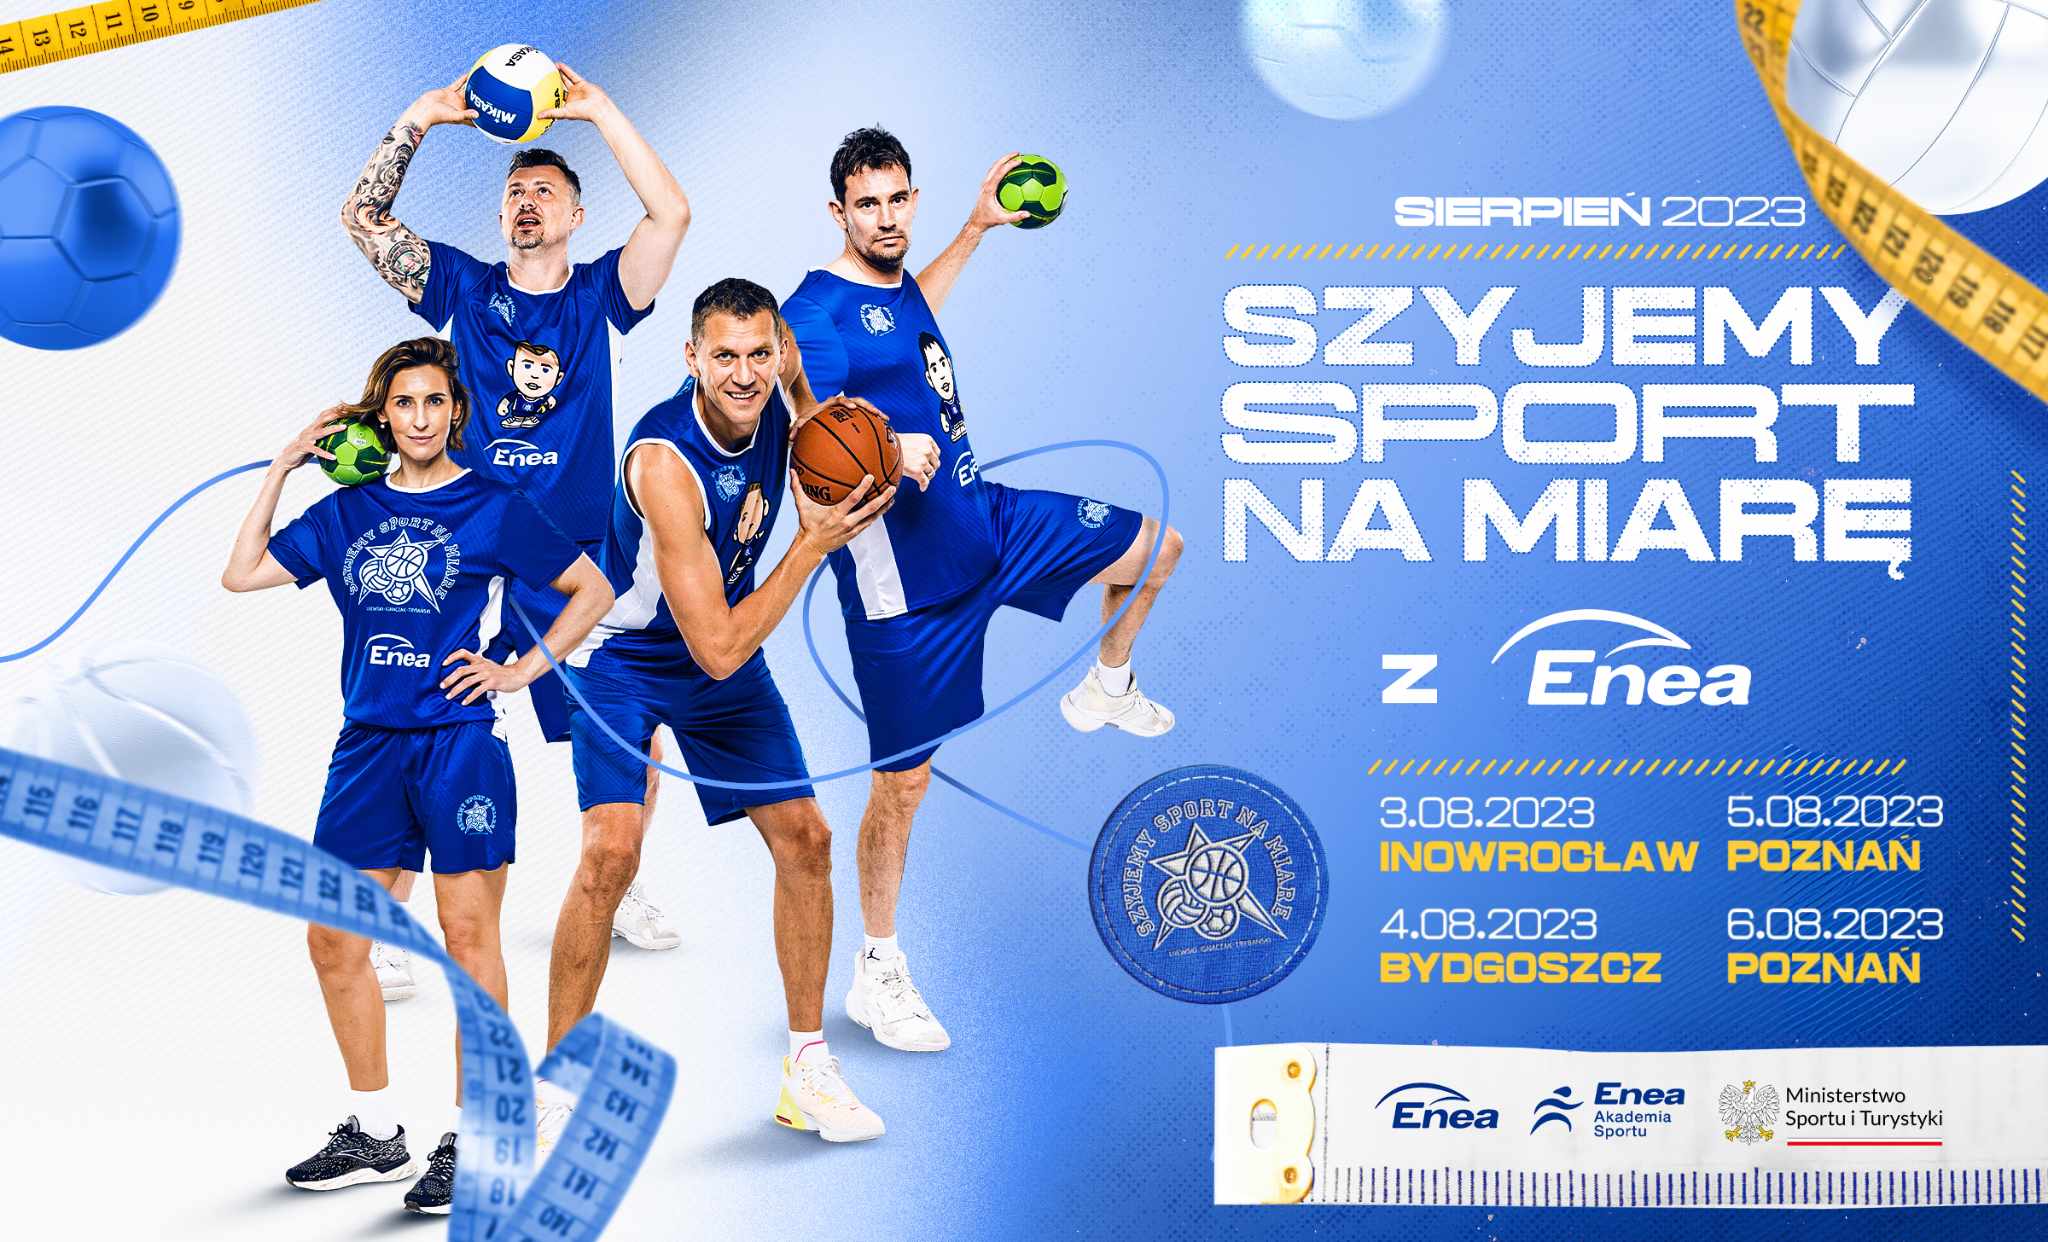 Grafika promująca wydarzenie zawierająca zdjęcia sportowców oraz logotypy sposorów